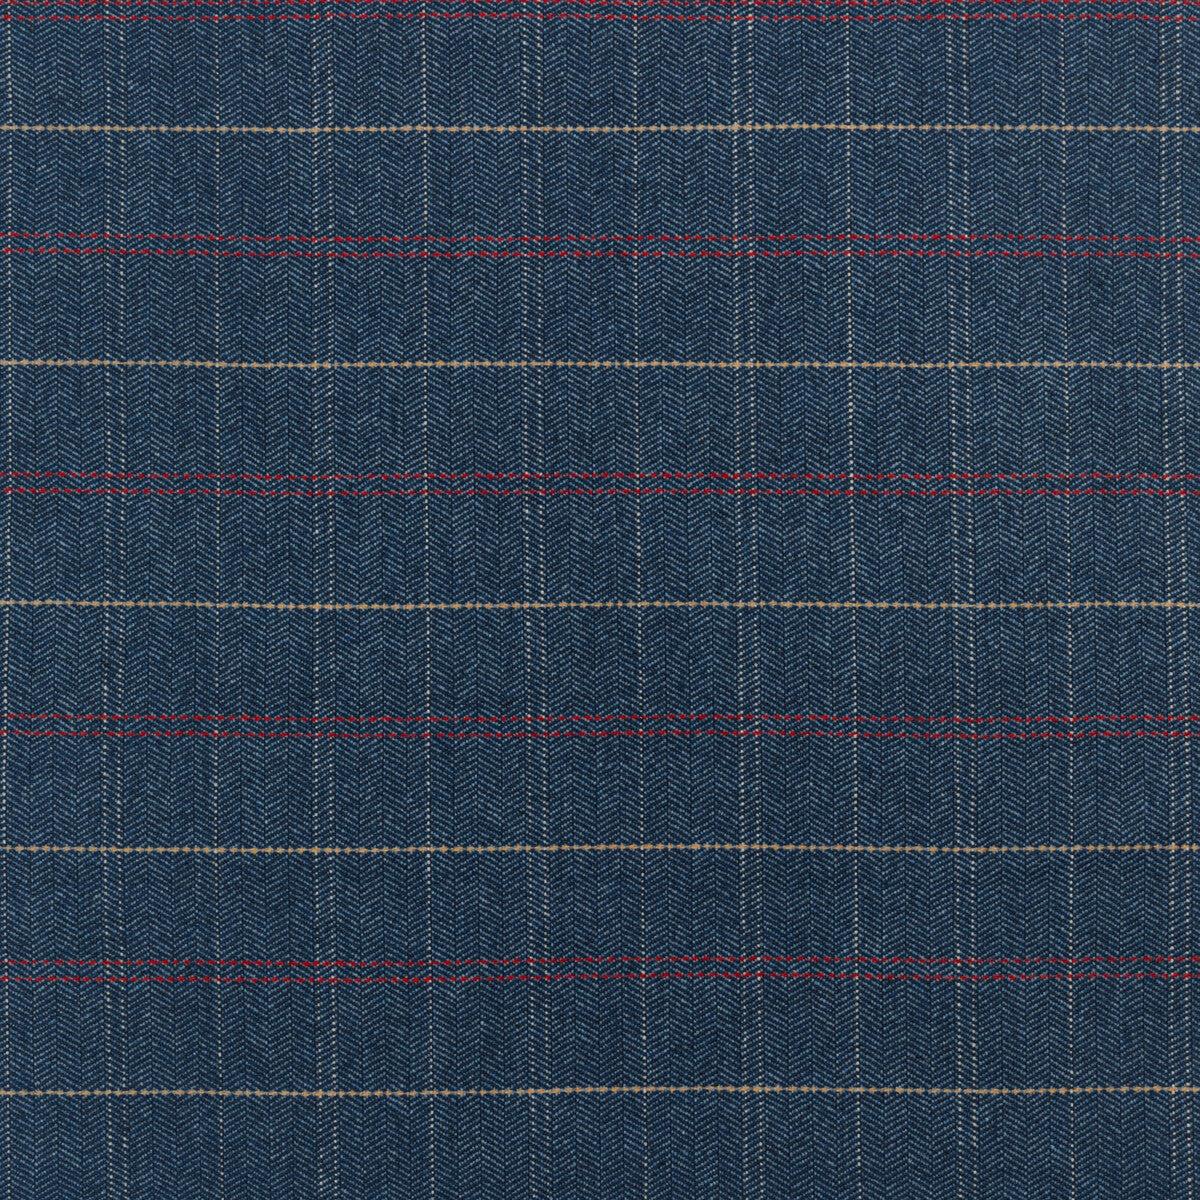 Kravet Design fabric in 36310-5 color - pattern 36310.5.0 - by Kravet Design